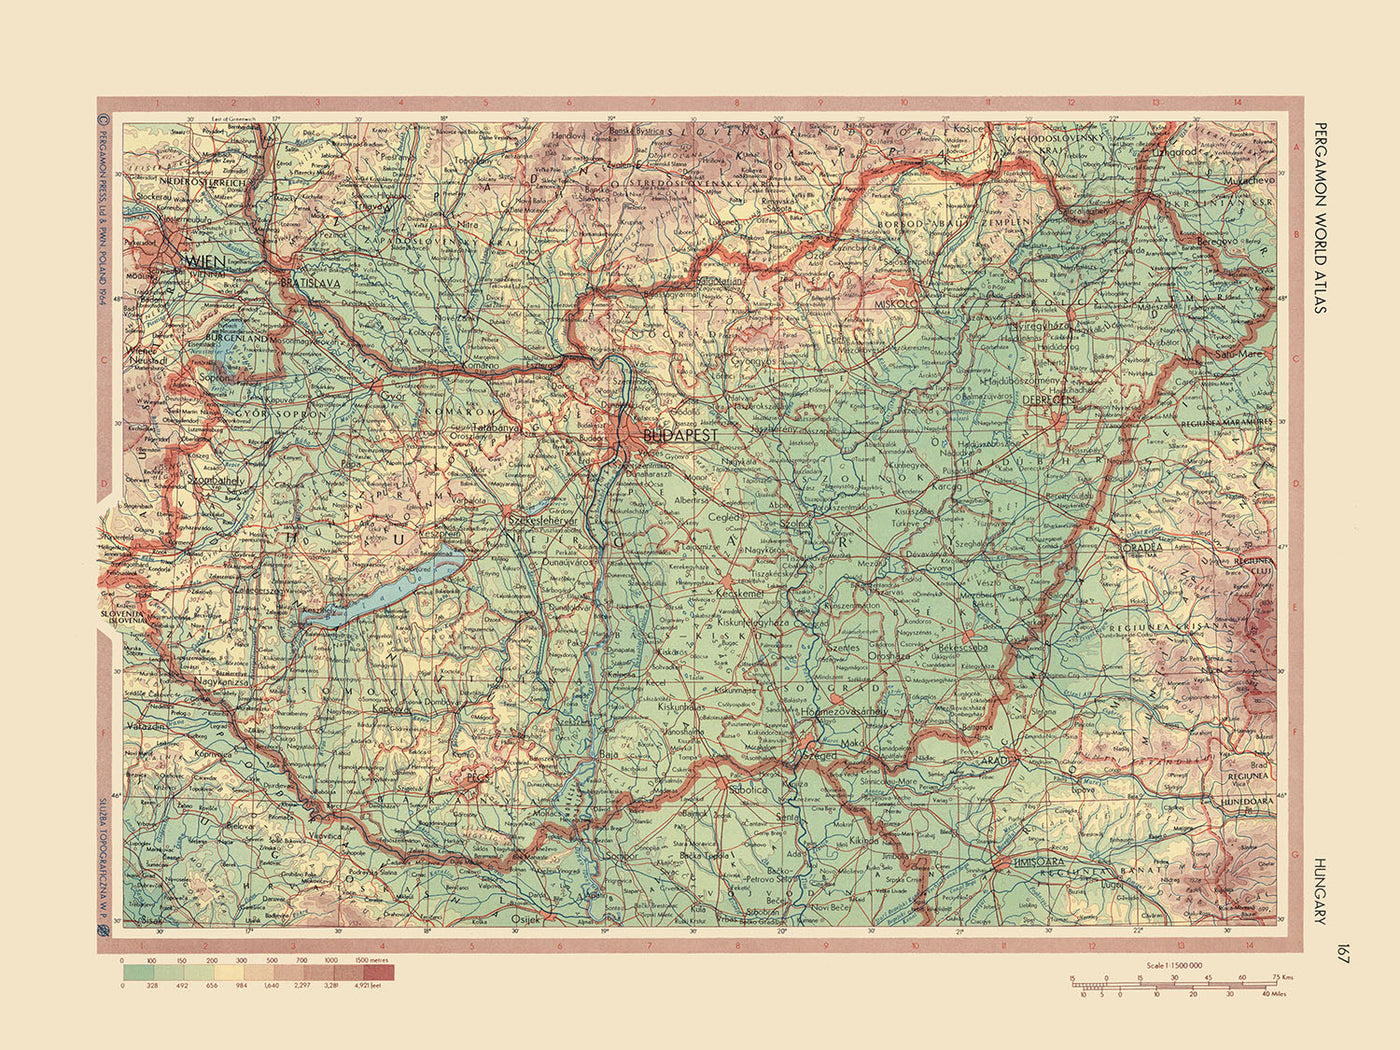 Alte Karte von Ungarn, 1967: Budapest, Donau, Plattensee, Große Ungarische Tiefebene, Mátra-Gebirge